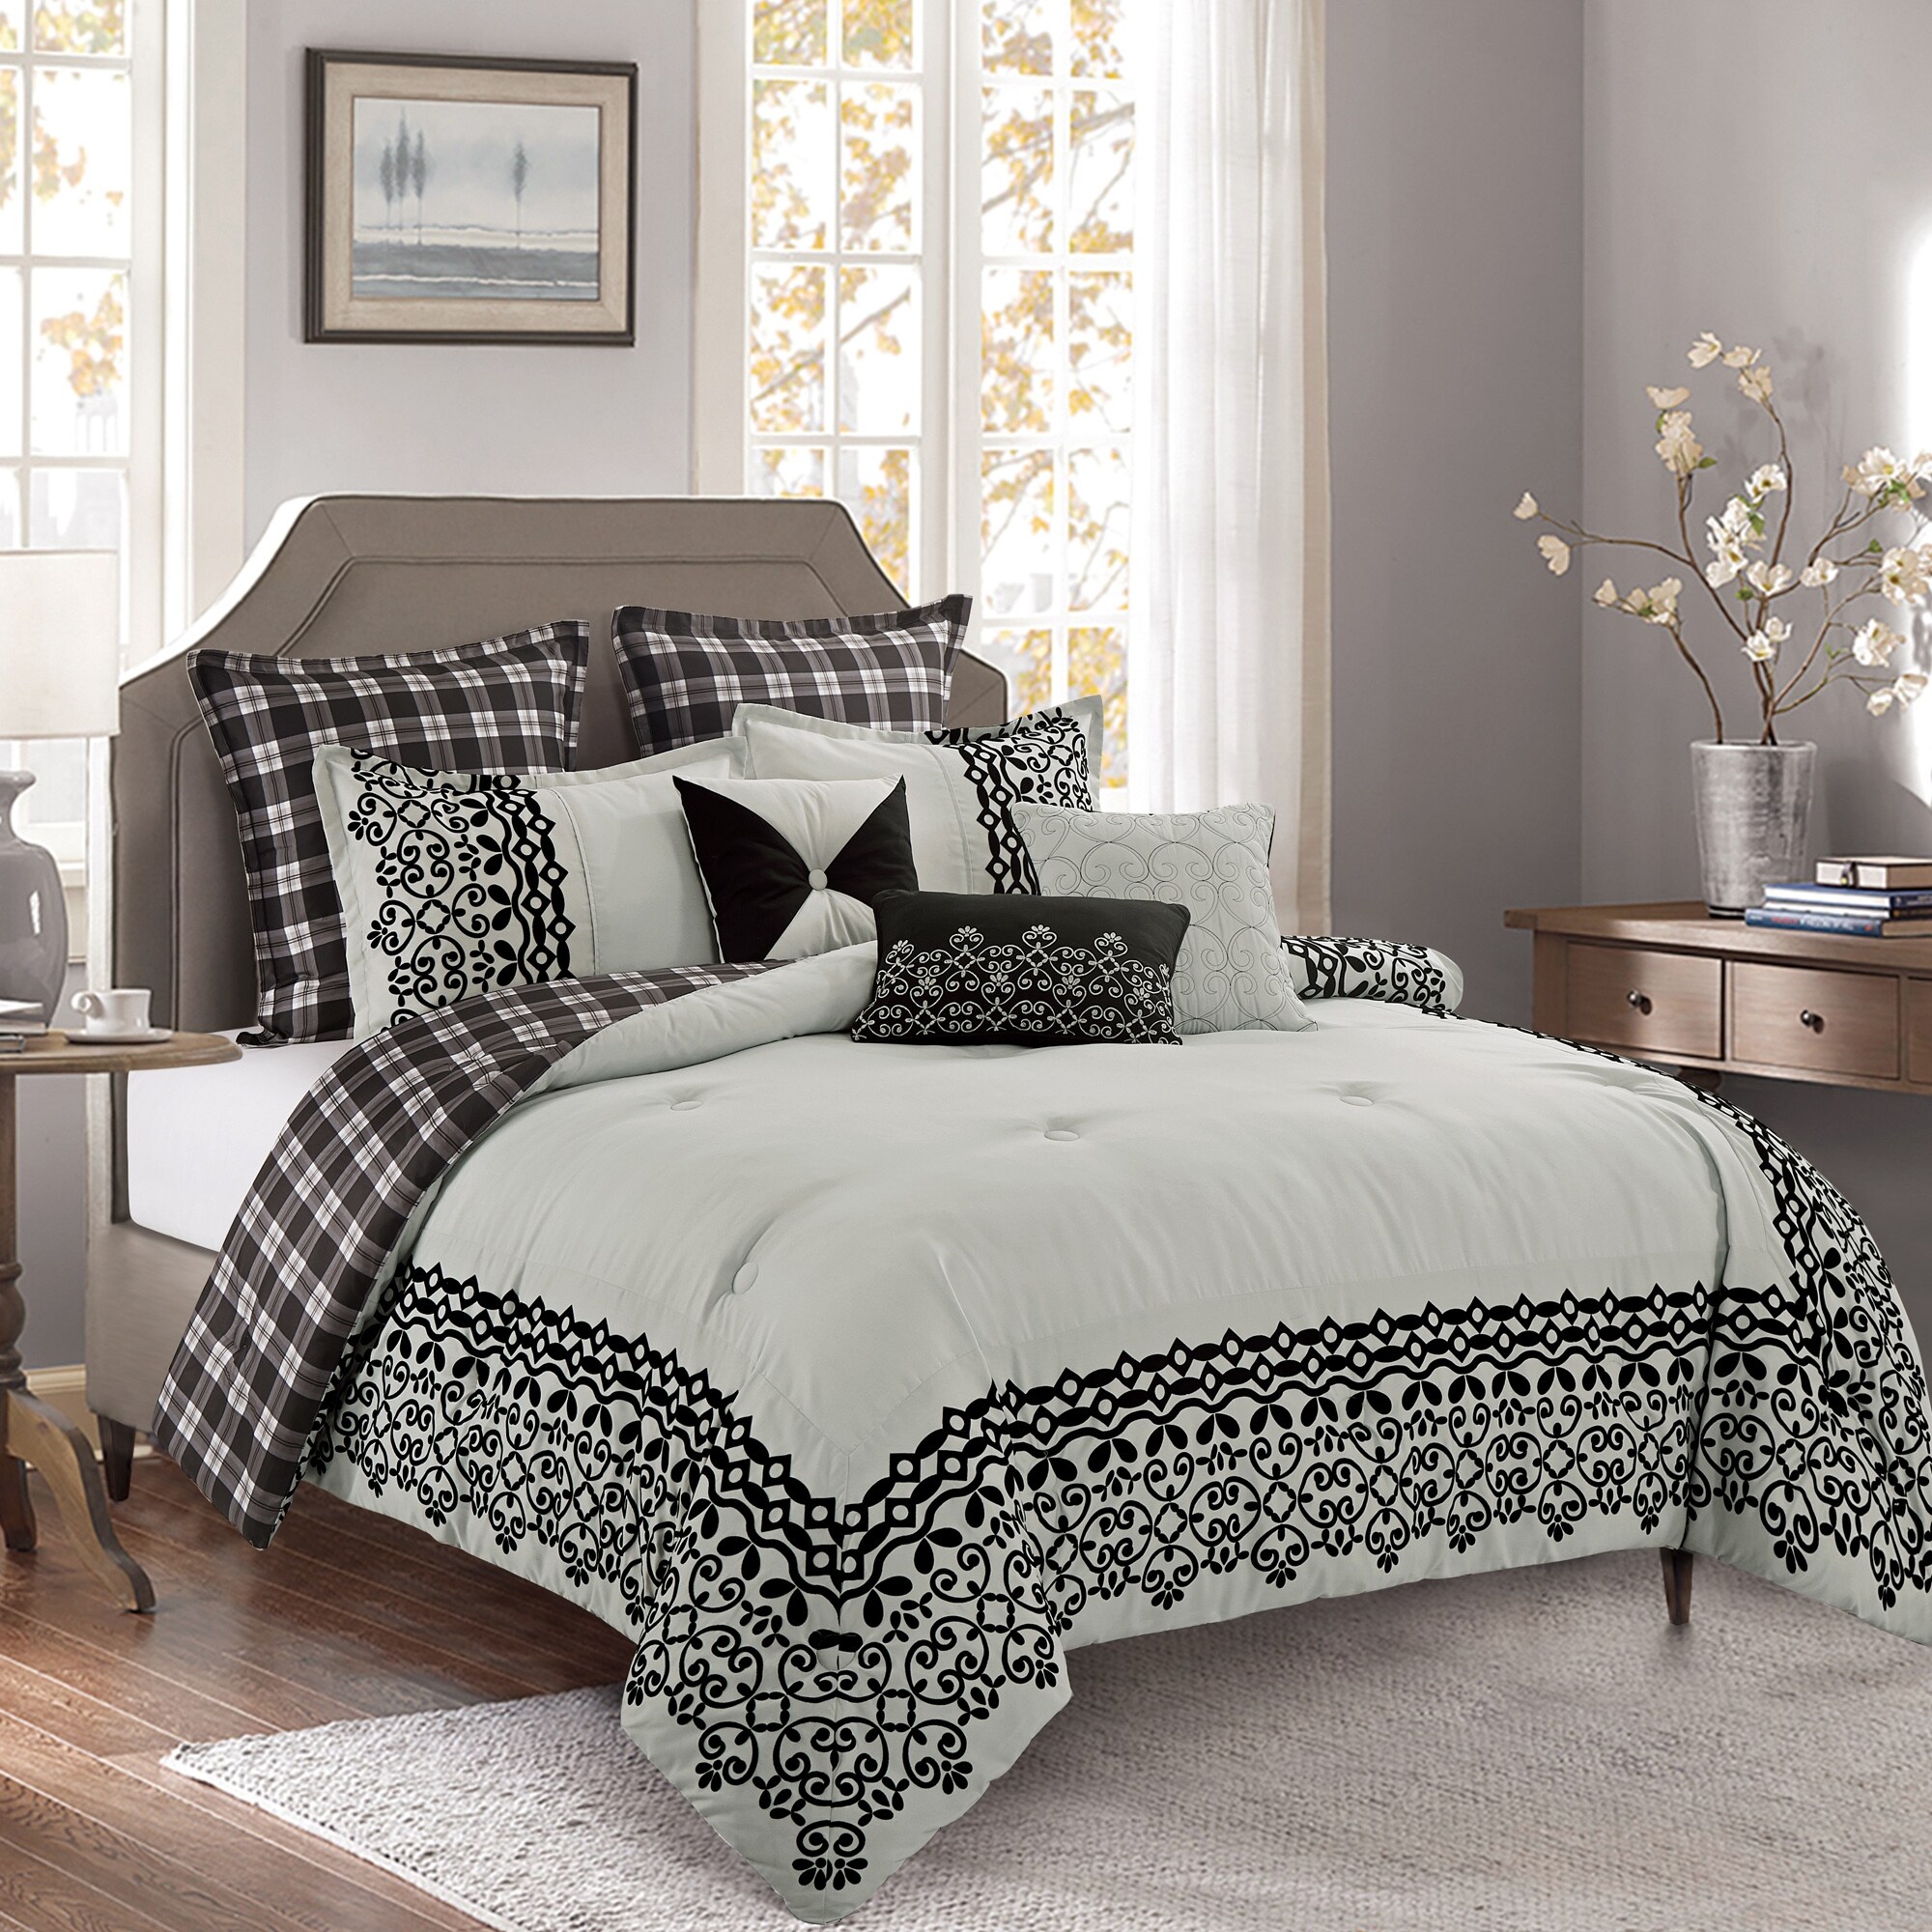 Shatex 7 Piece King Luxury Microfiber Dark Gray Oversized Bedroom Comforter Sets